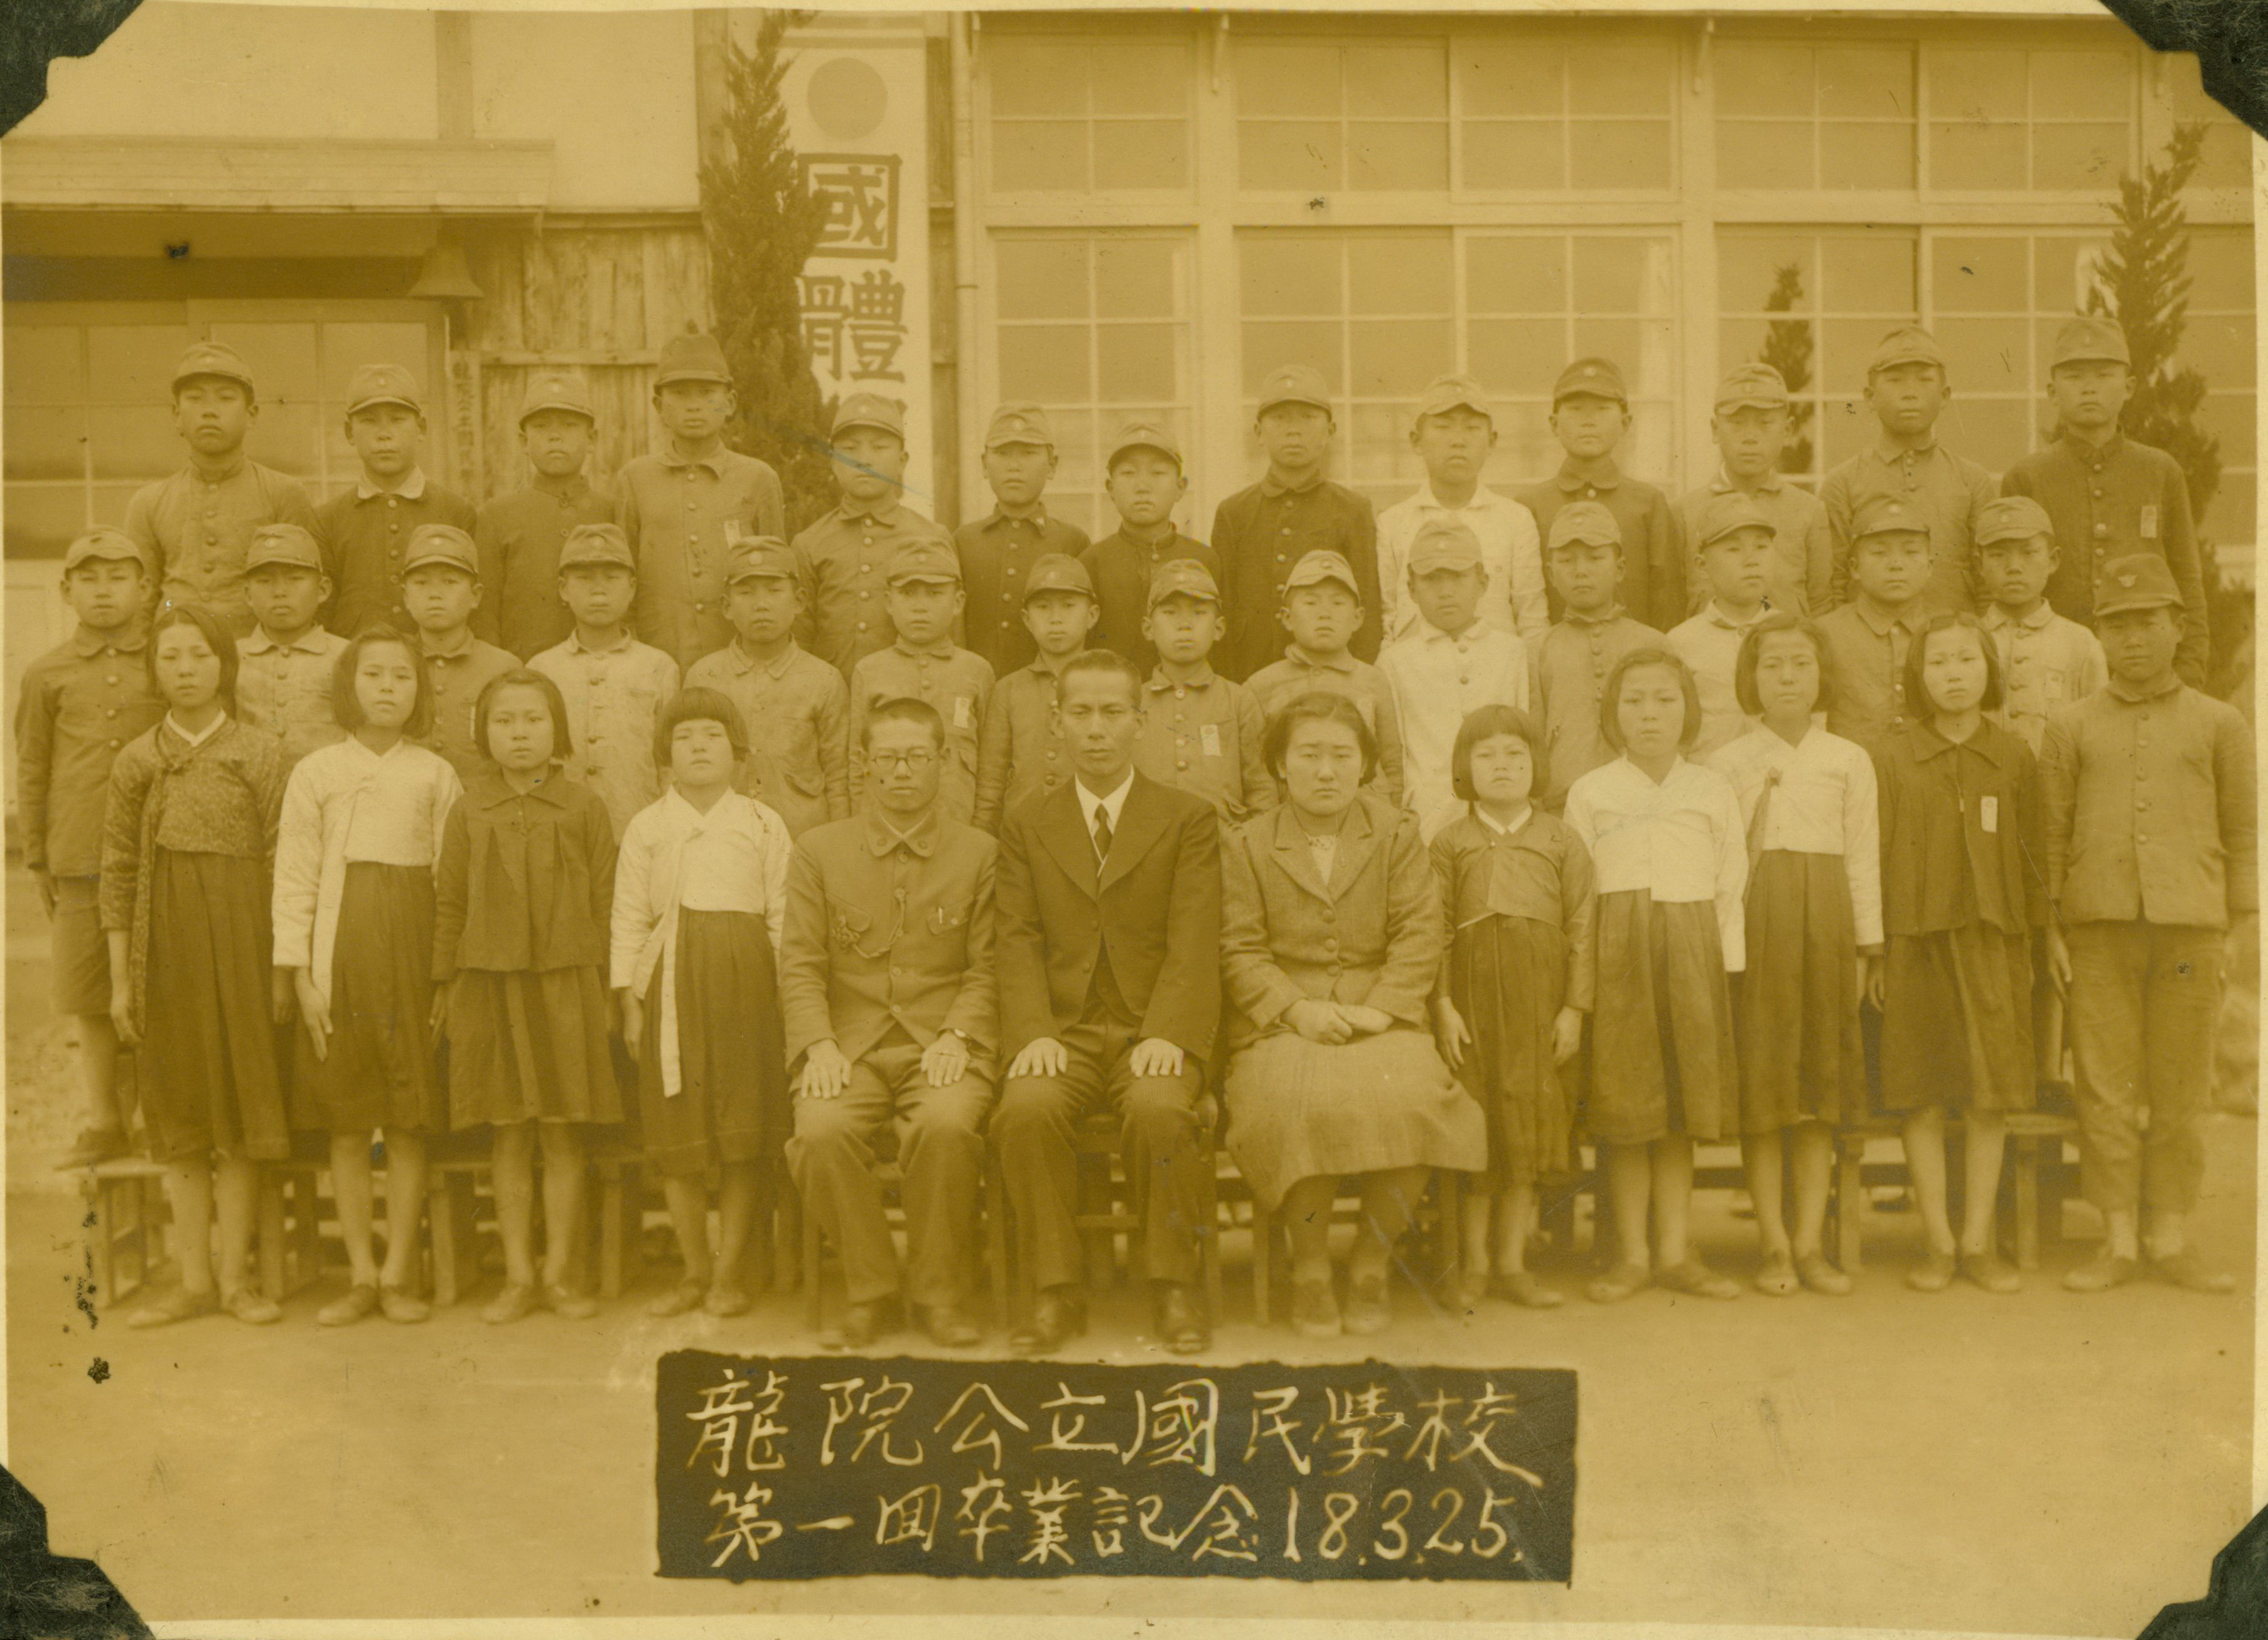 
															
															
																
																	용원공립국민학교 제1회 졸업기념 - 1943년 [1번째 이미지]
																
																
															
														